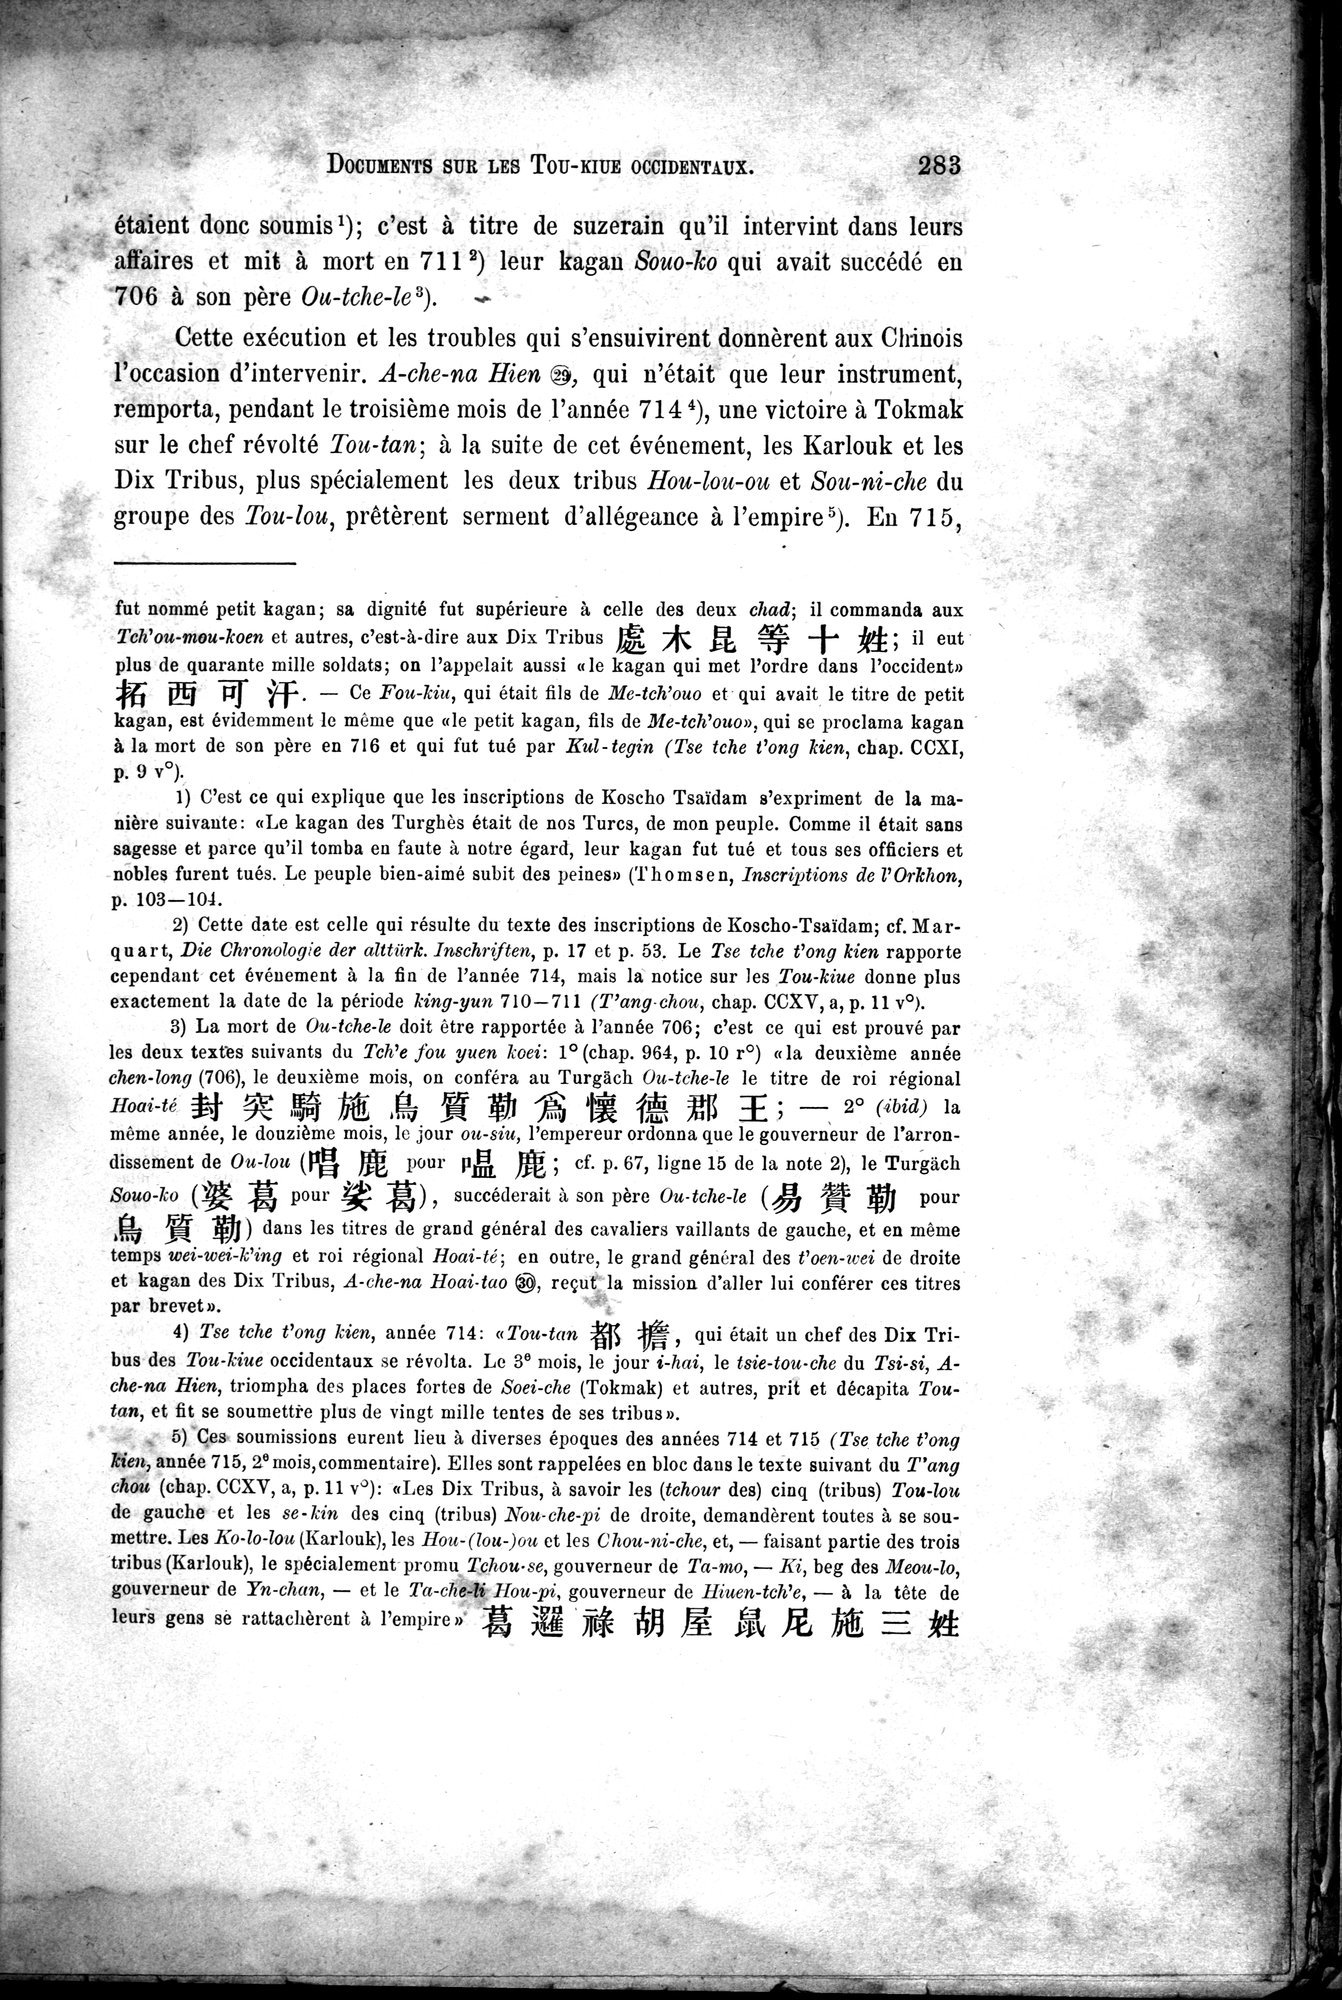 Documents sur les Tou-kiue (Turcs) occidentaux : vol.1 / Page 293 (Grayscale High Resolution Image)